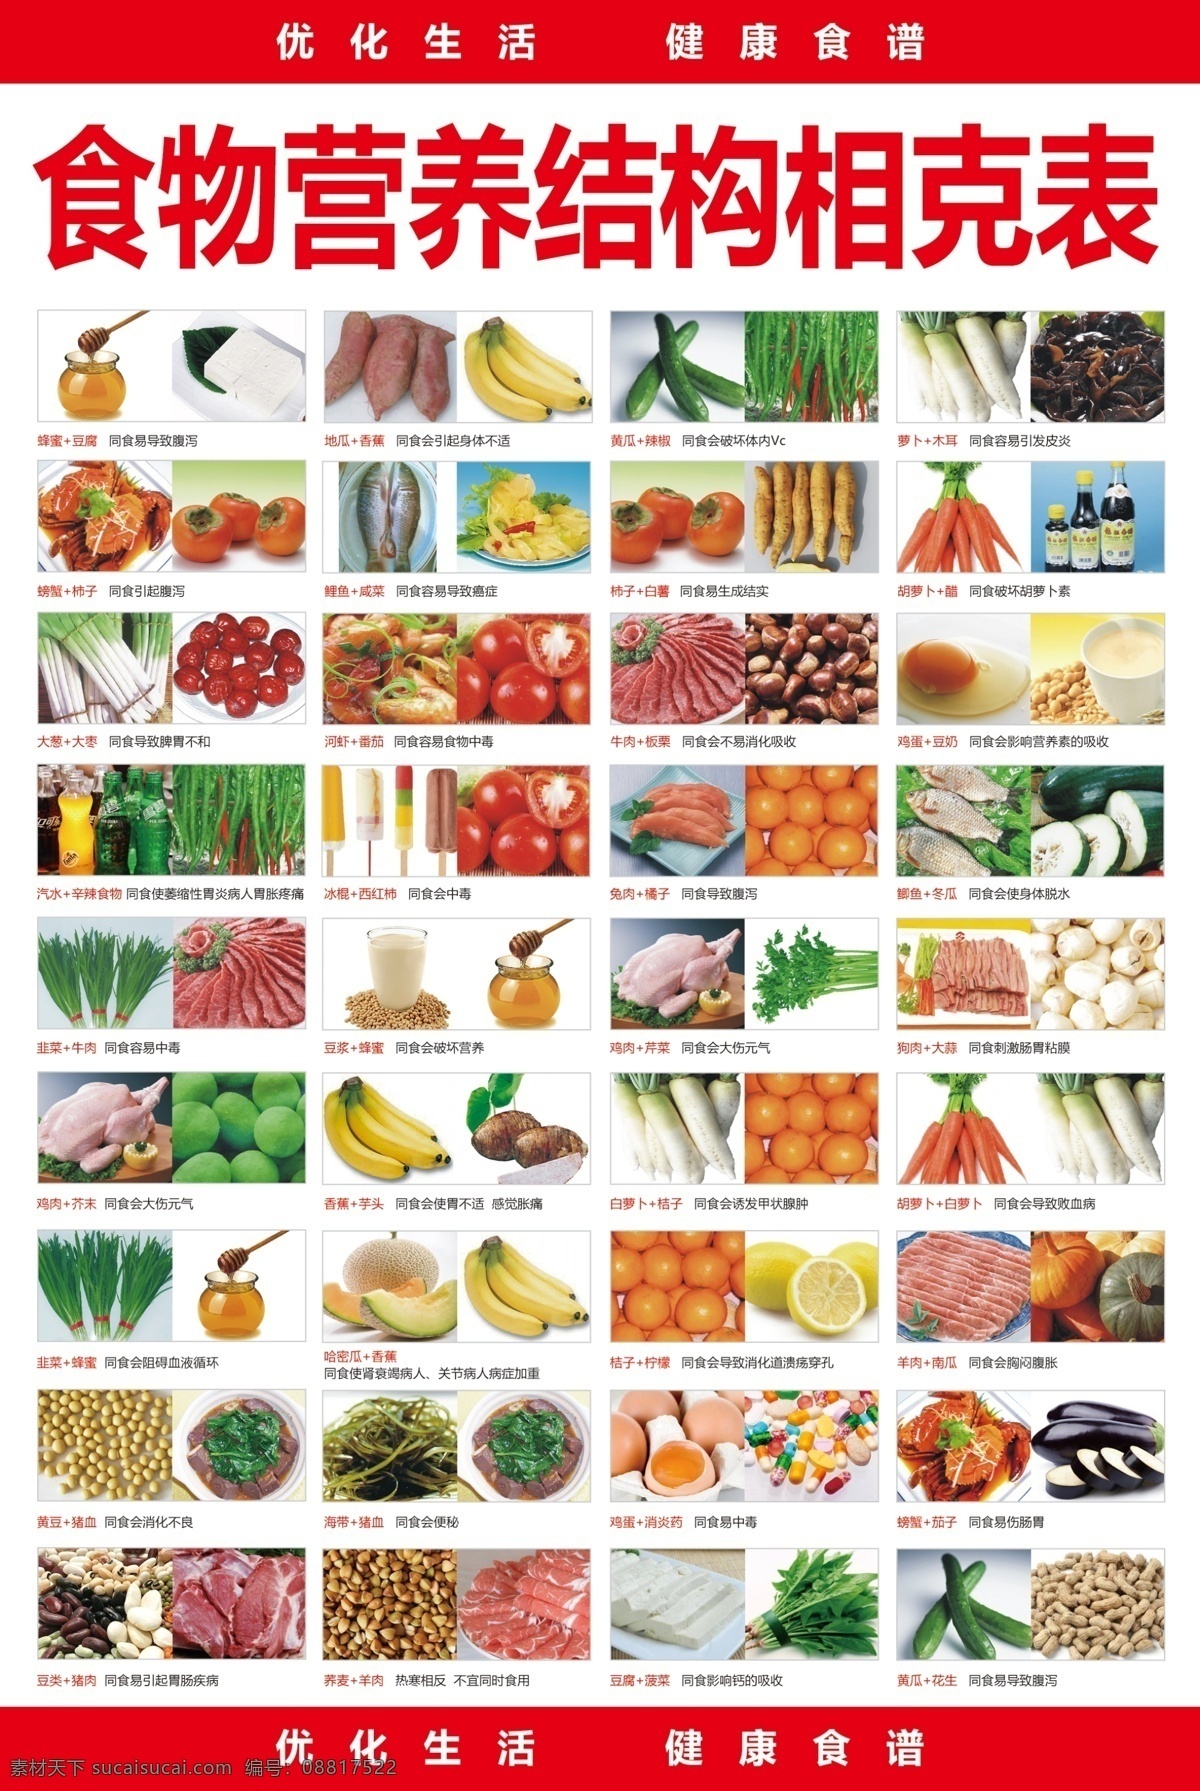 食物 营养 结构 相克 表 营养结构 相克表 食物相克 水果 蔬菜 肉类 不宜搭配 海报